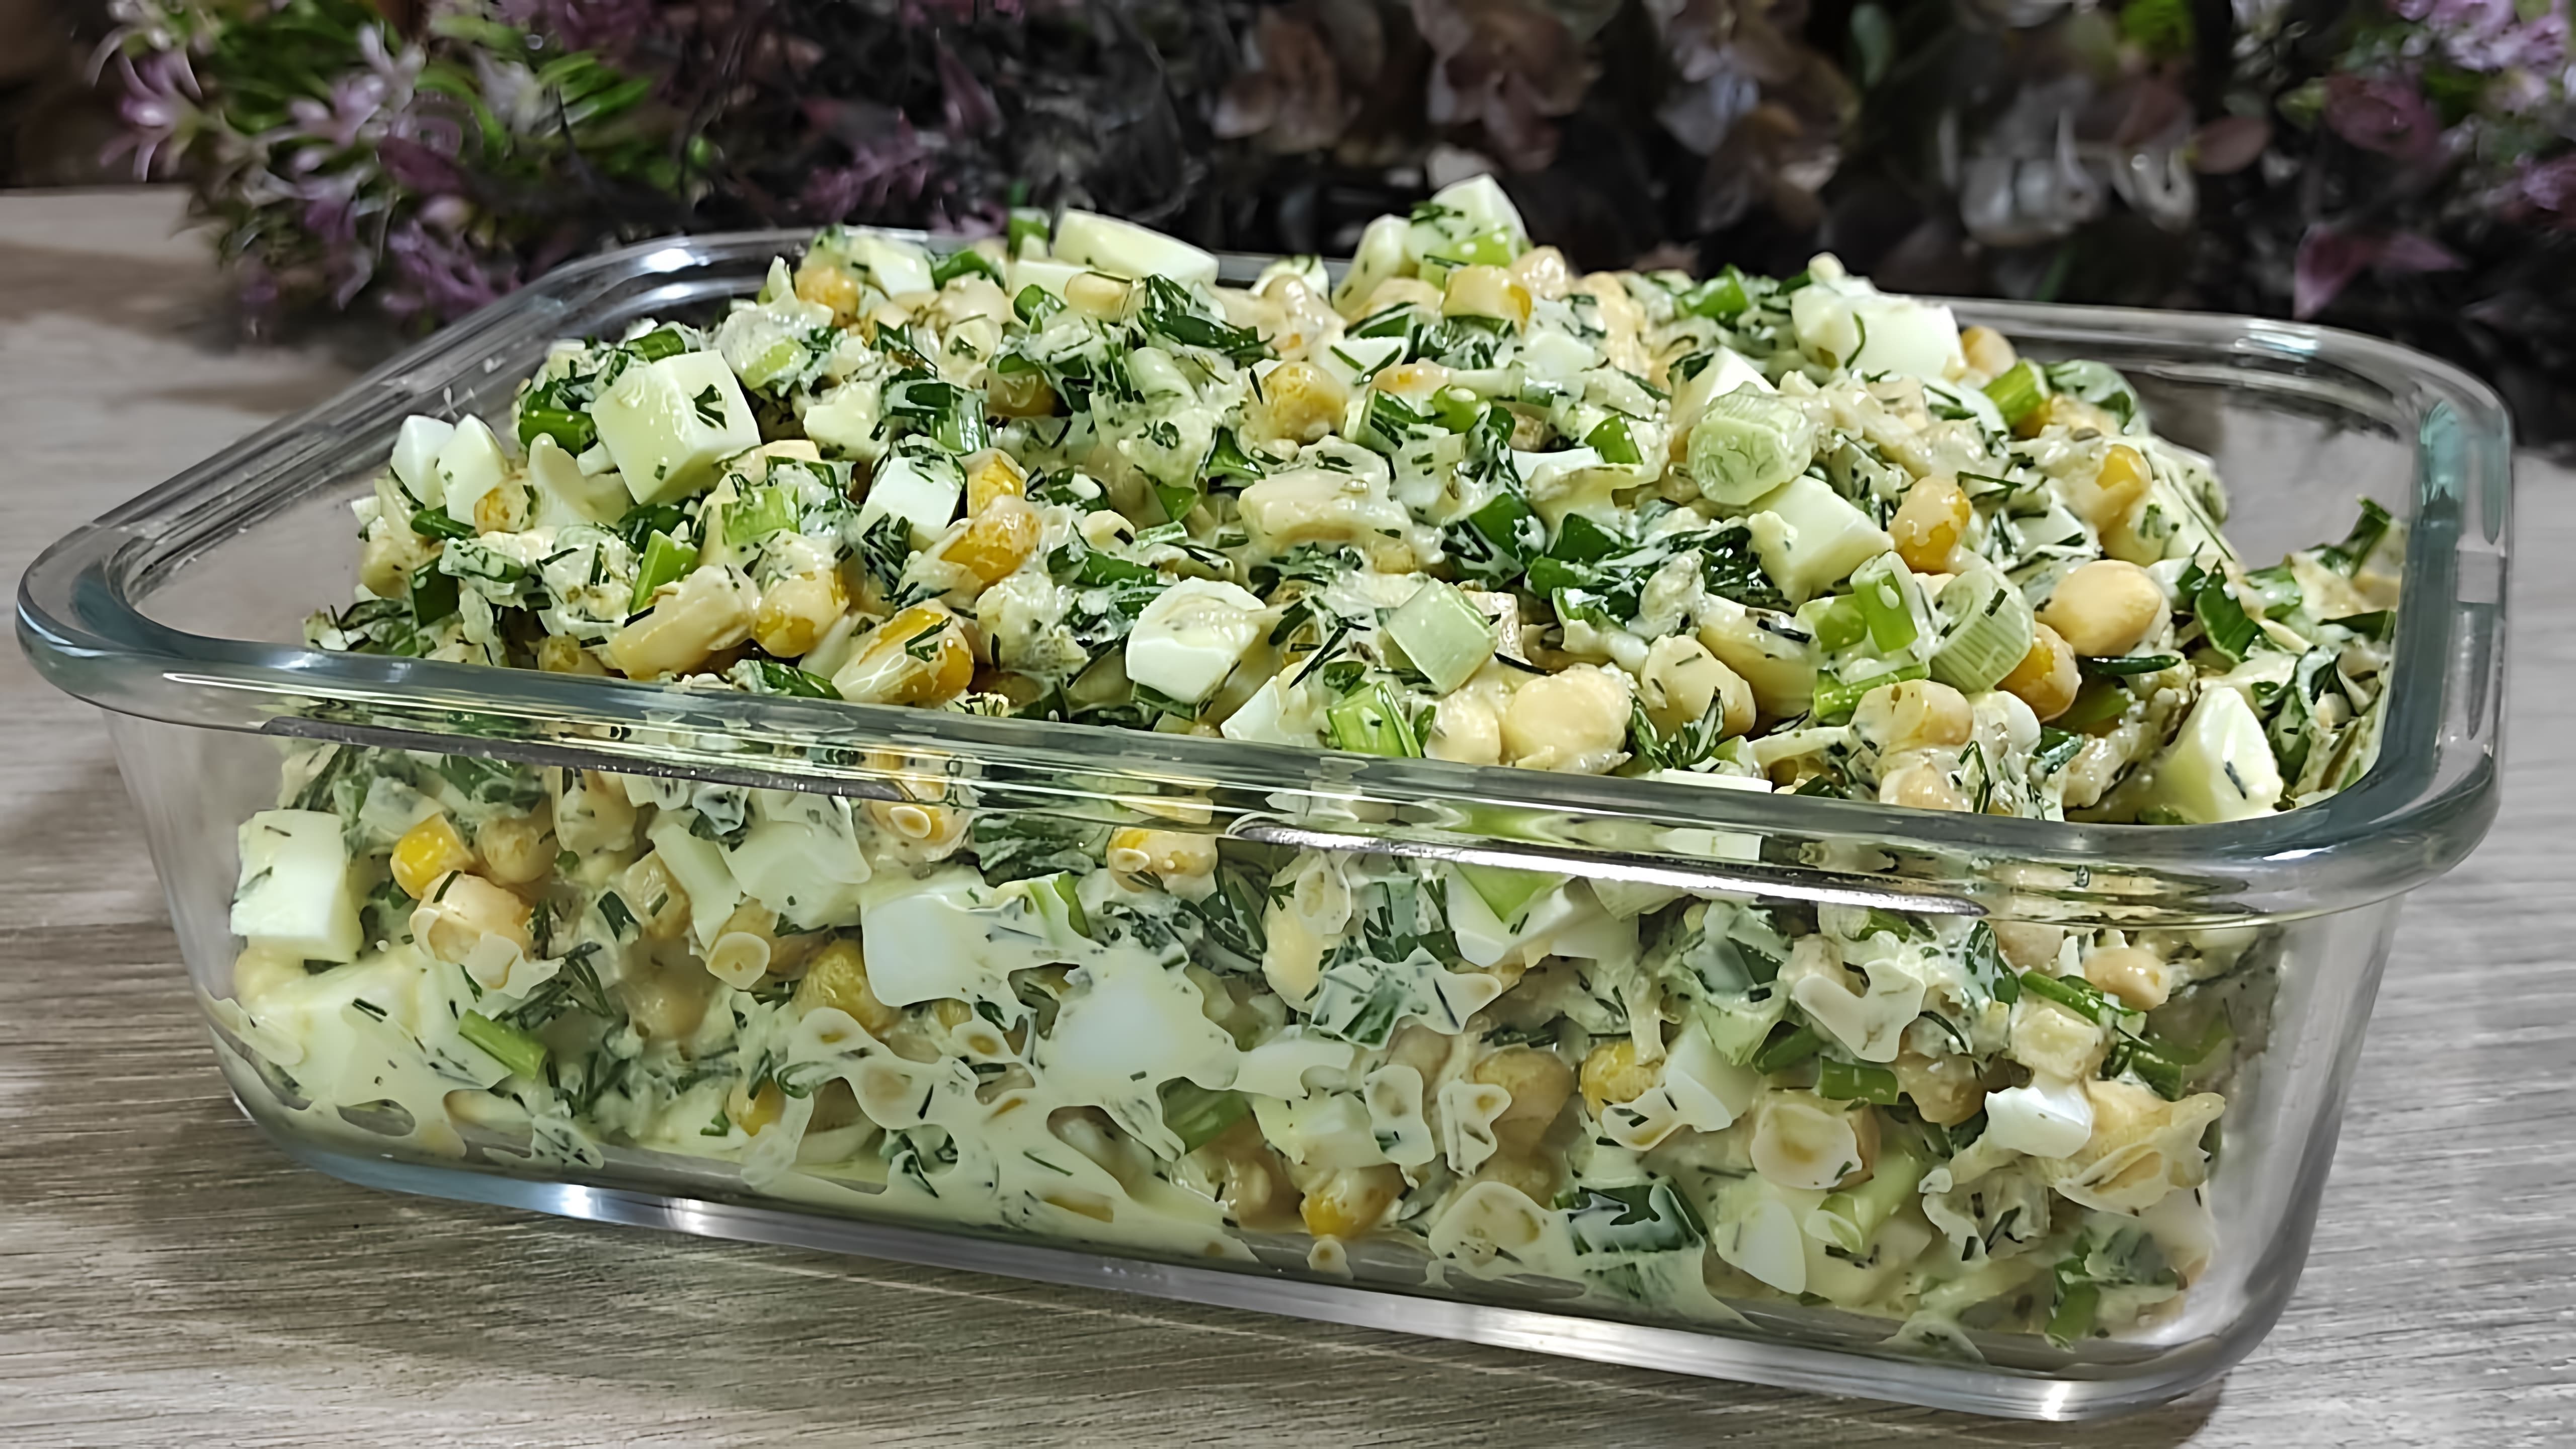 В этом видео демонстрируется процесс приготовления весеннего салата с зеленым луком, яйцом и соленым огурцом